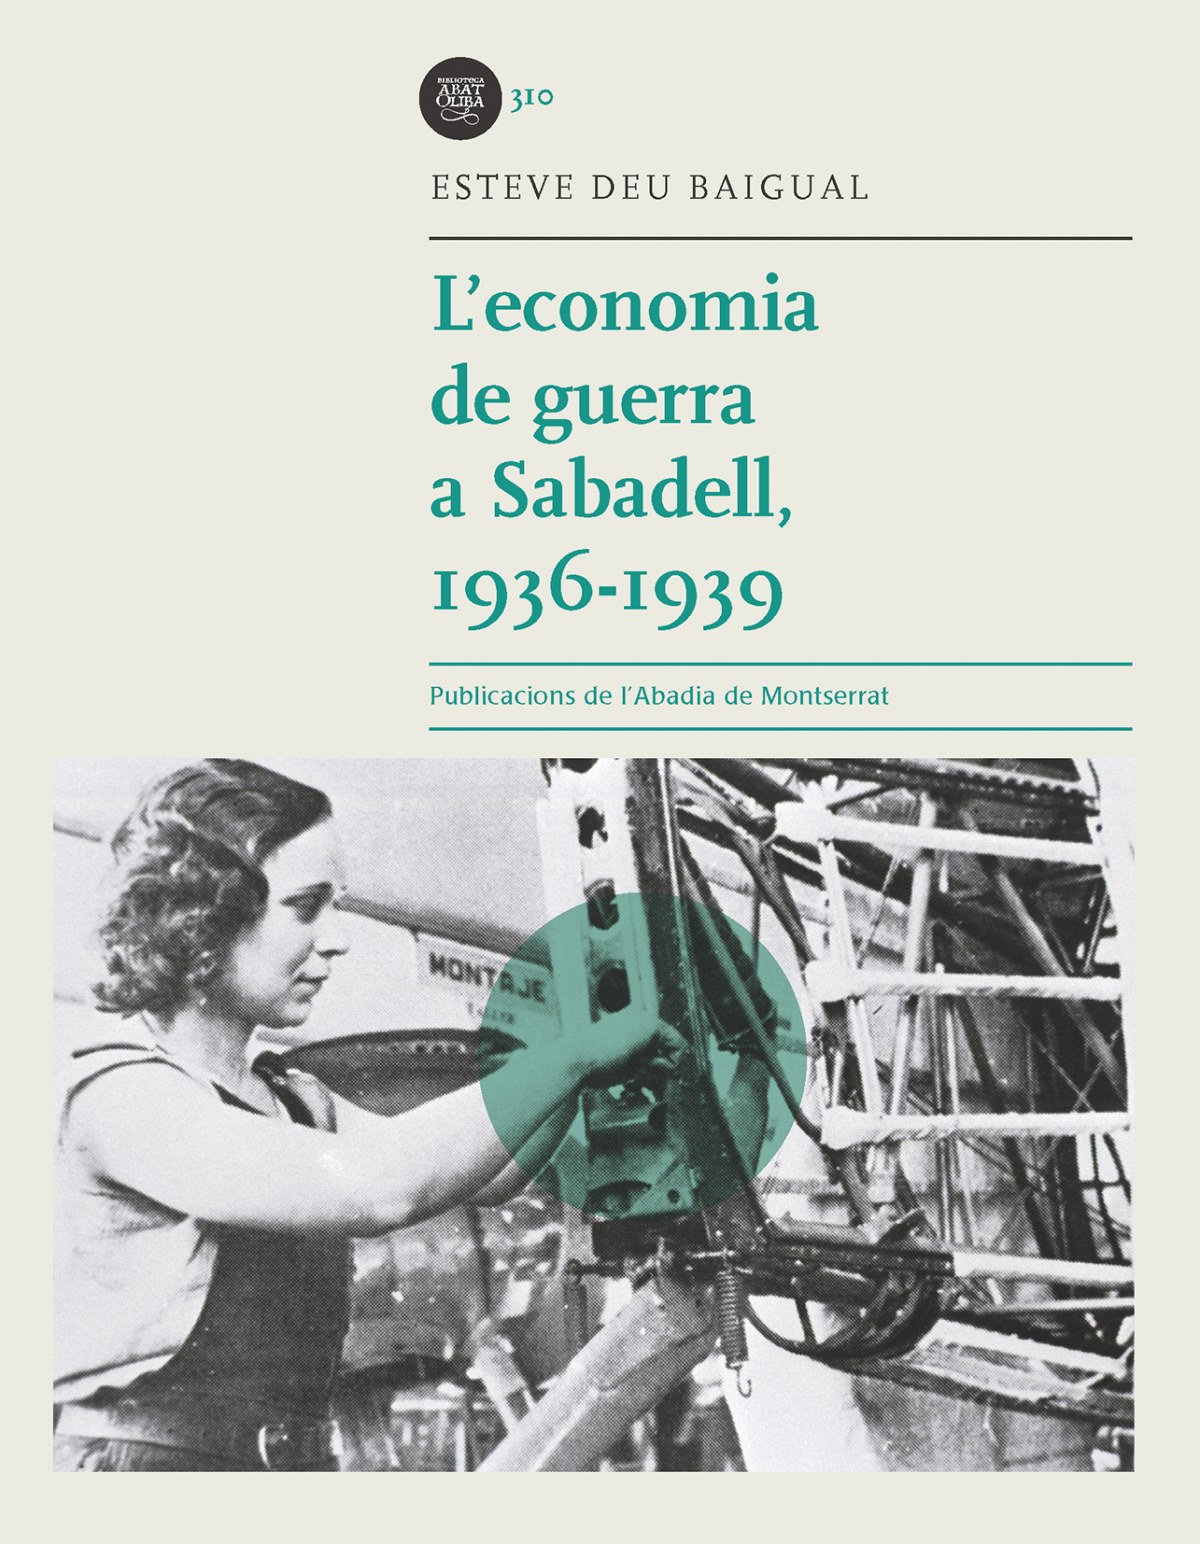 Resultado de imagen de L'economia de guerra a Sabadell, 19361939. Esteve Deu Baigual.